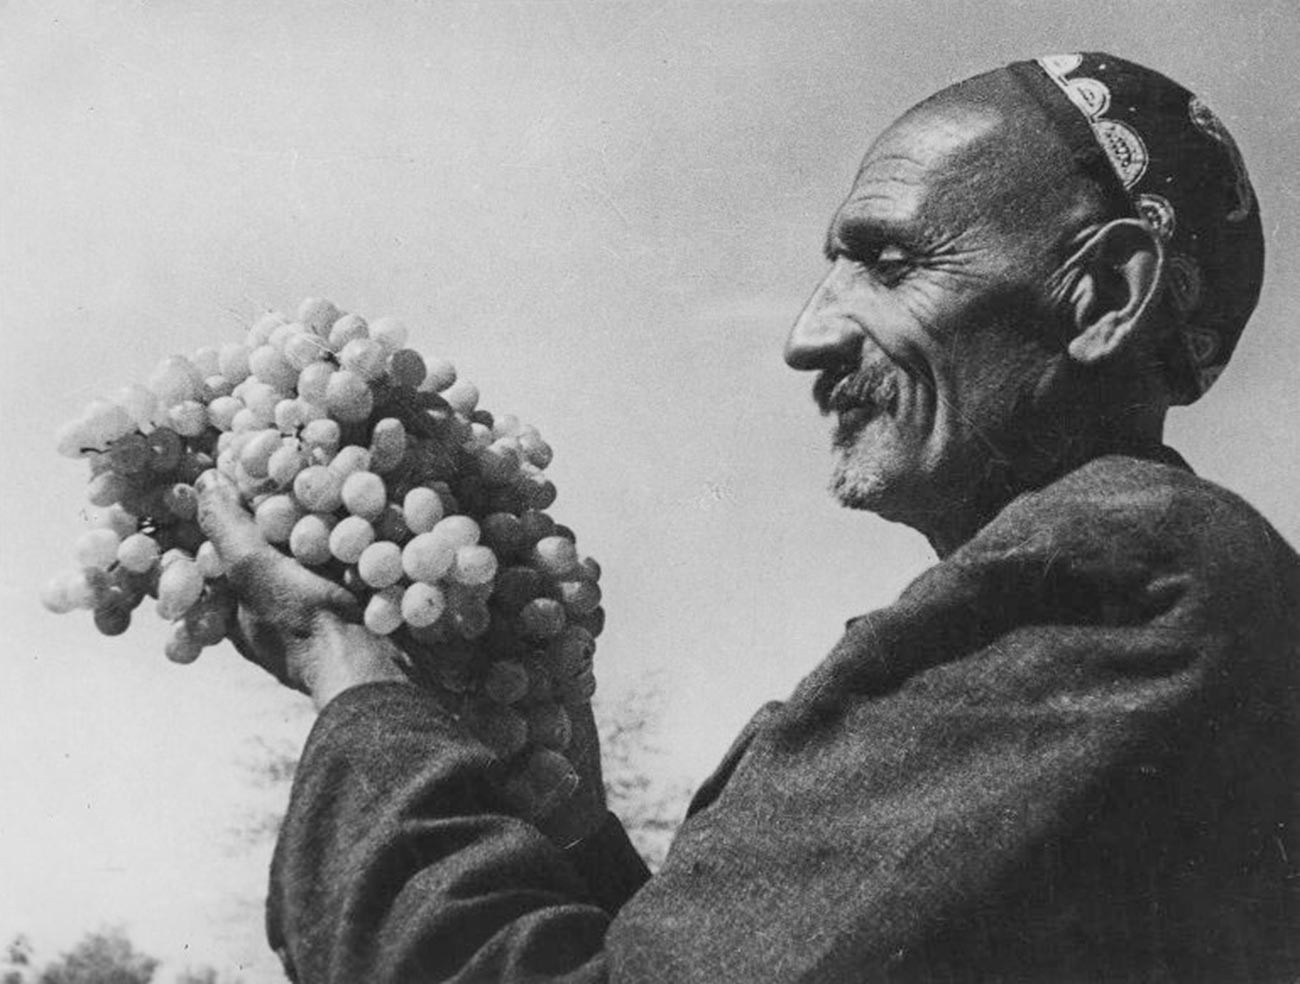 ウズベク・ソビエト社会主義共和国で最高のブドウ栽培者で勲章も受章したリザマト・ムサムハメドフ。ウズベキスタン独自のブドウの品種「ルンドヴァイス」を開発した。1939年。